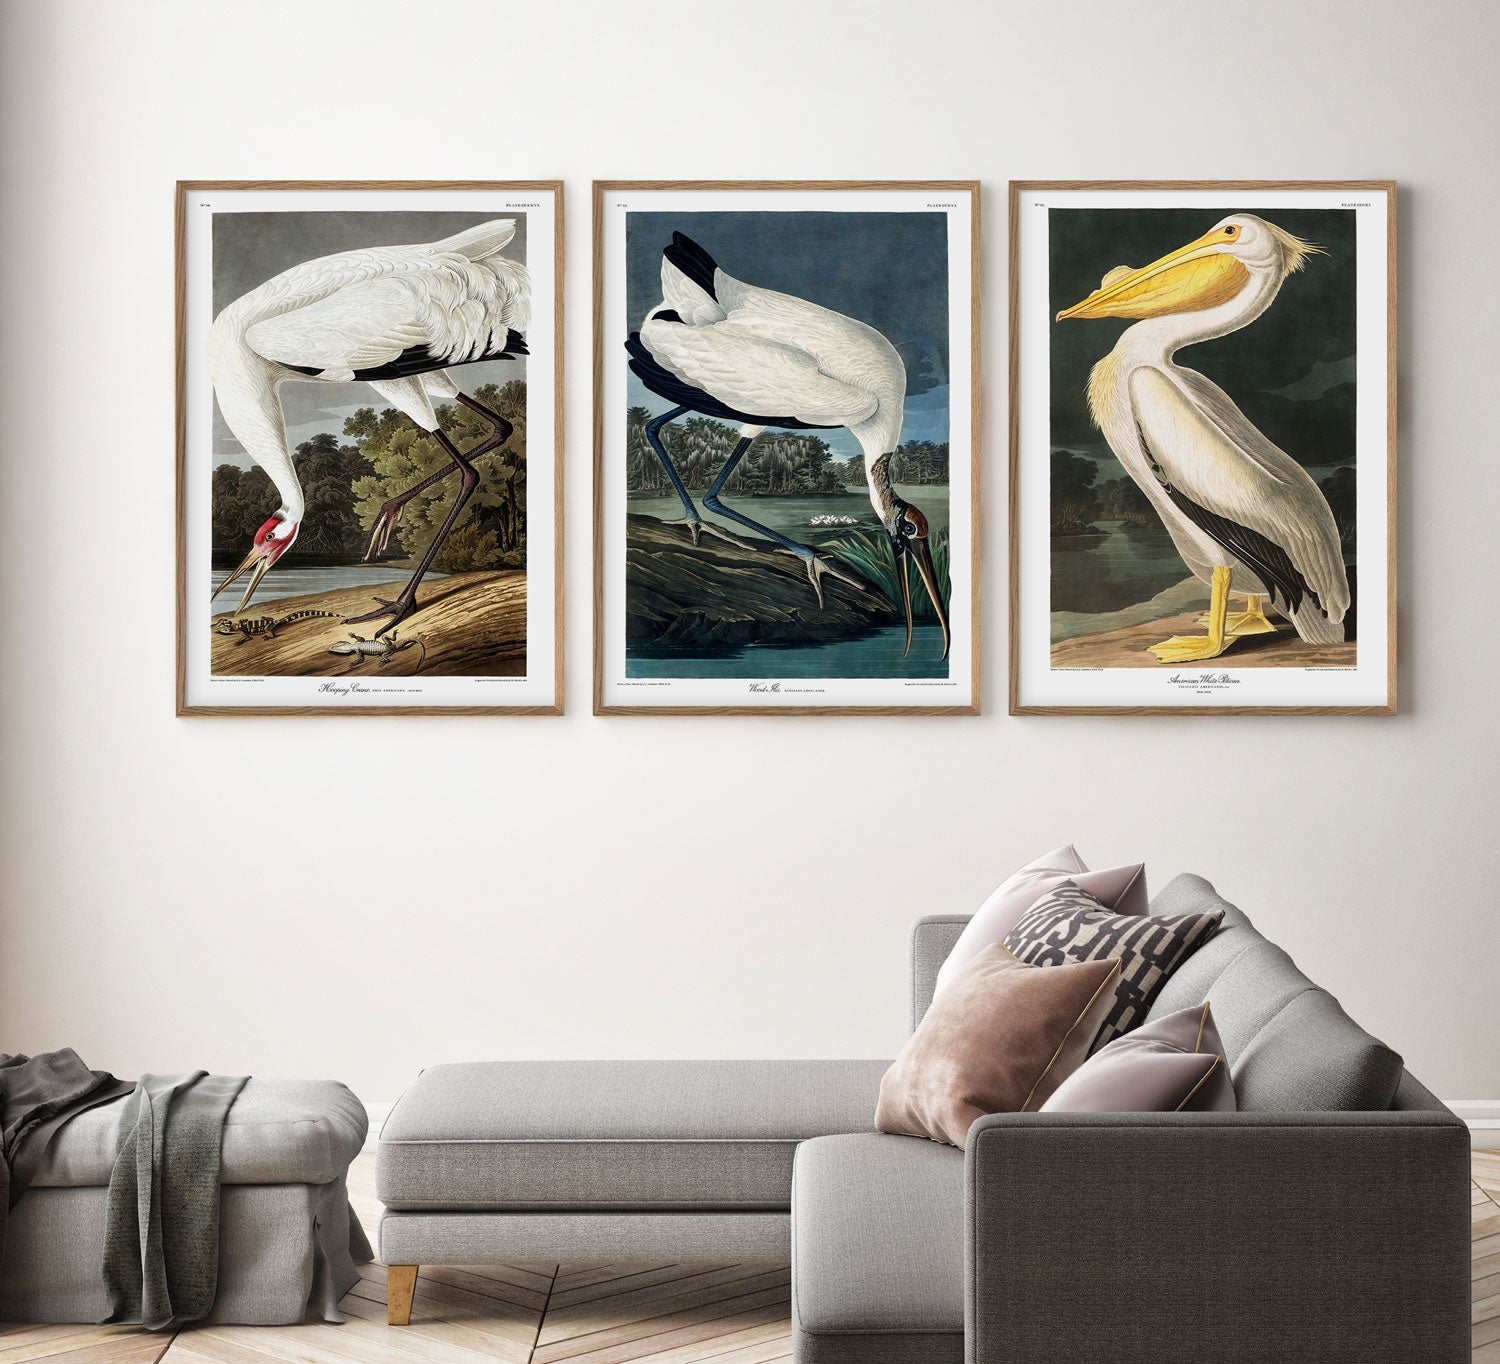 John James Audubon Velvet Duck,Framed Prints,wall art prints,large wall art oversized,The Birds of America,f1951